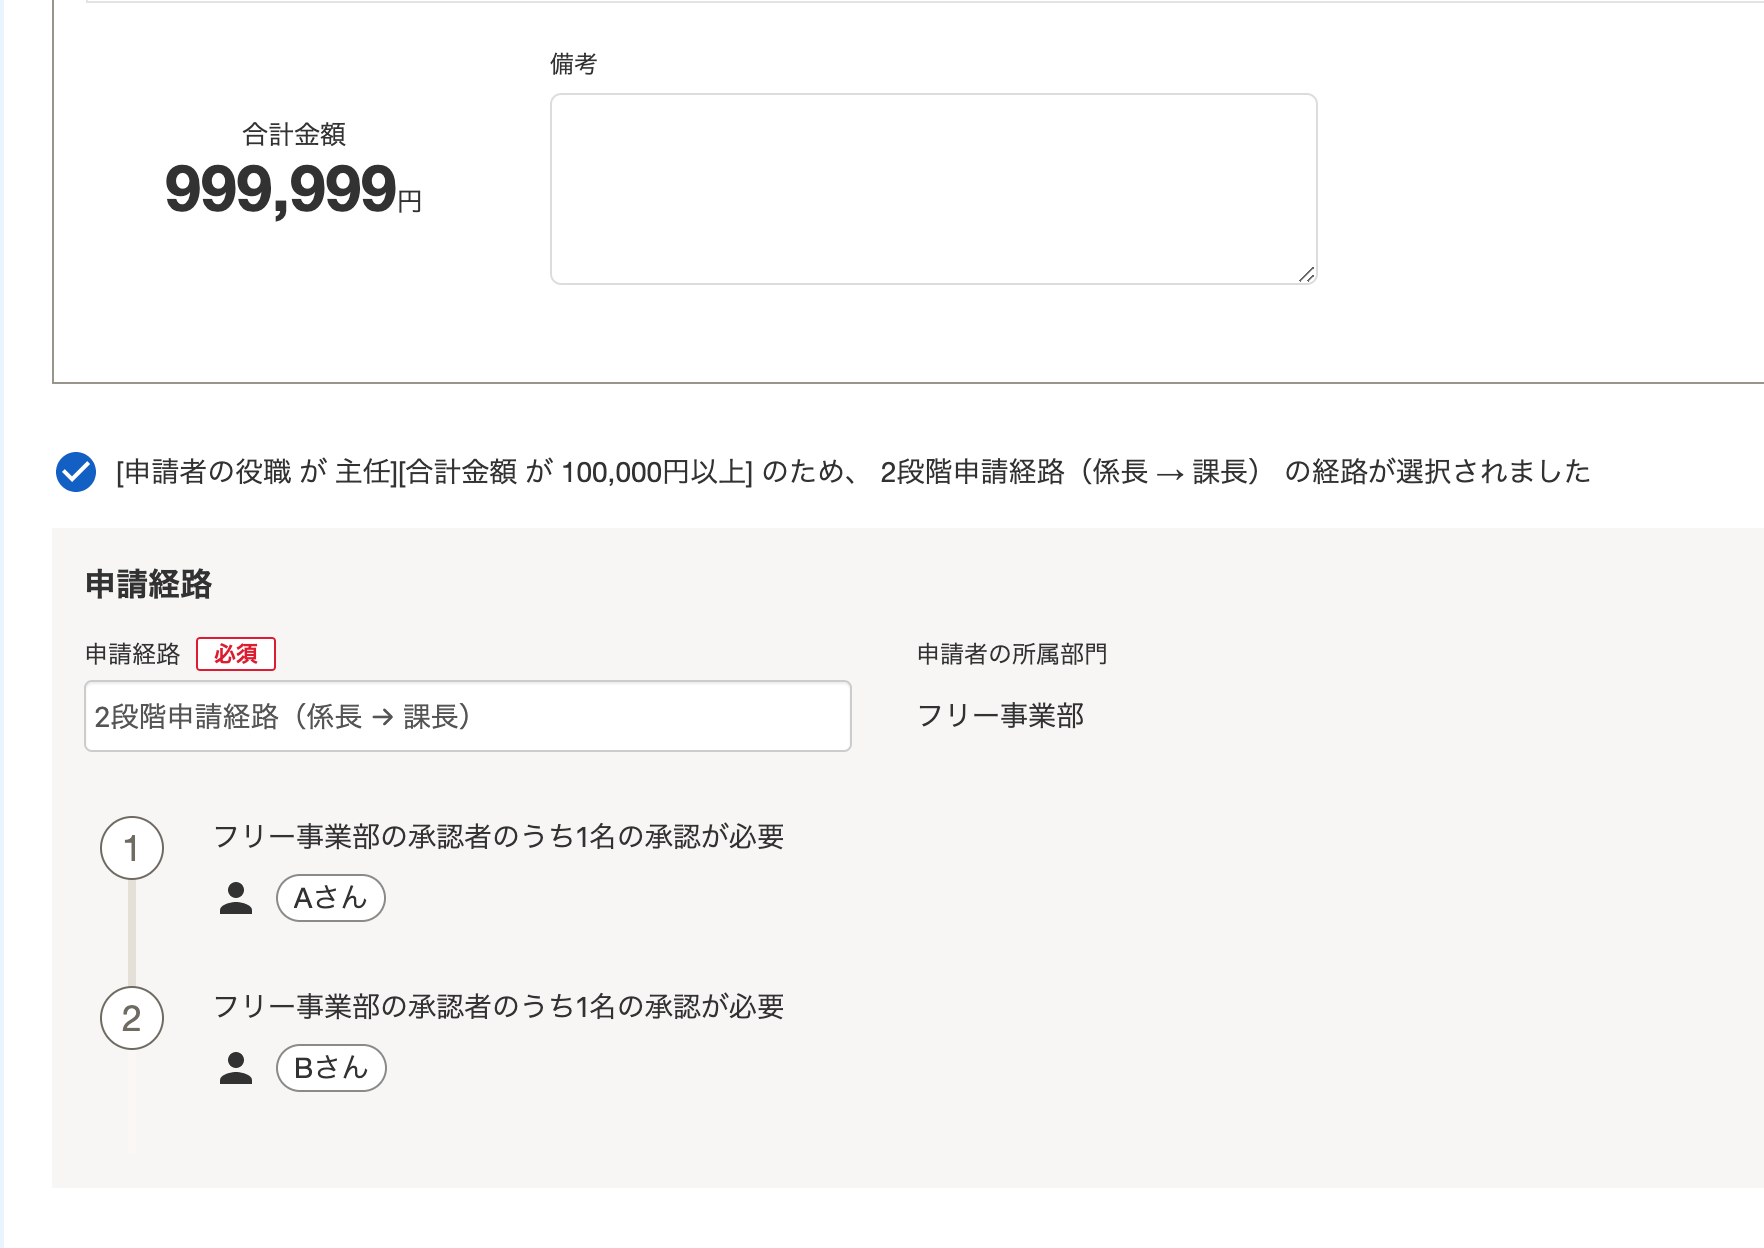 役職「主任」が合計金額「999,999円」の申請をする場合に、2段階申請経路が自動選択されているスクリーンショット